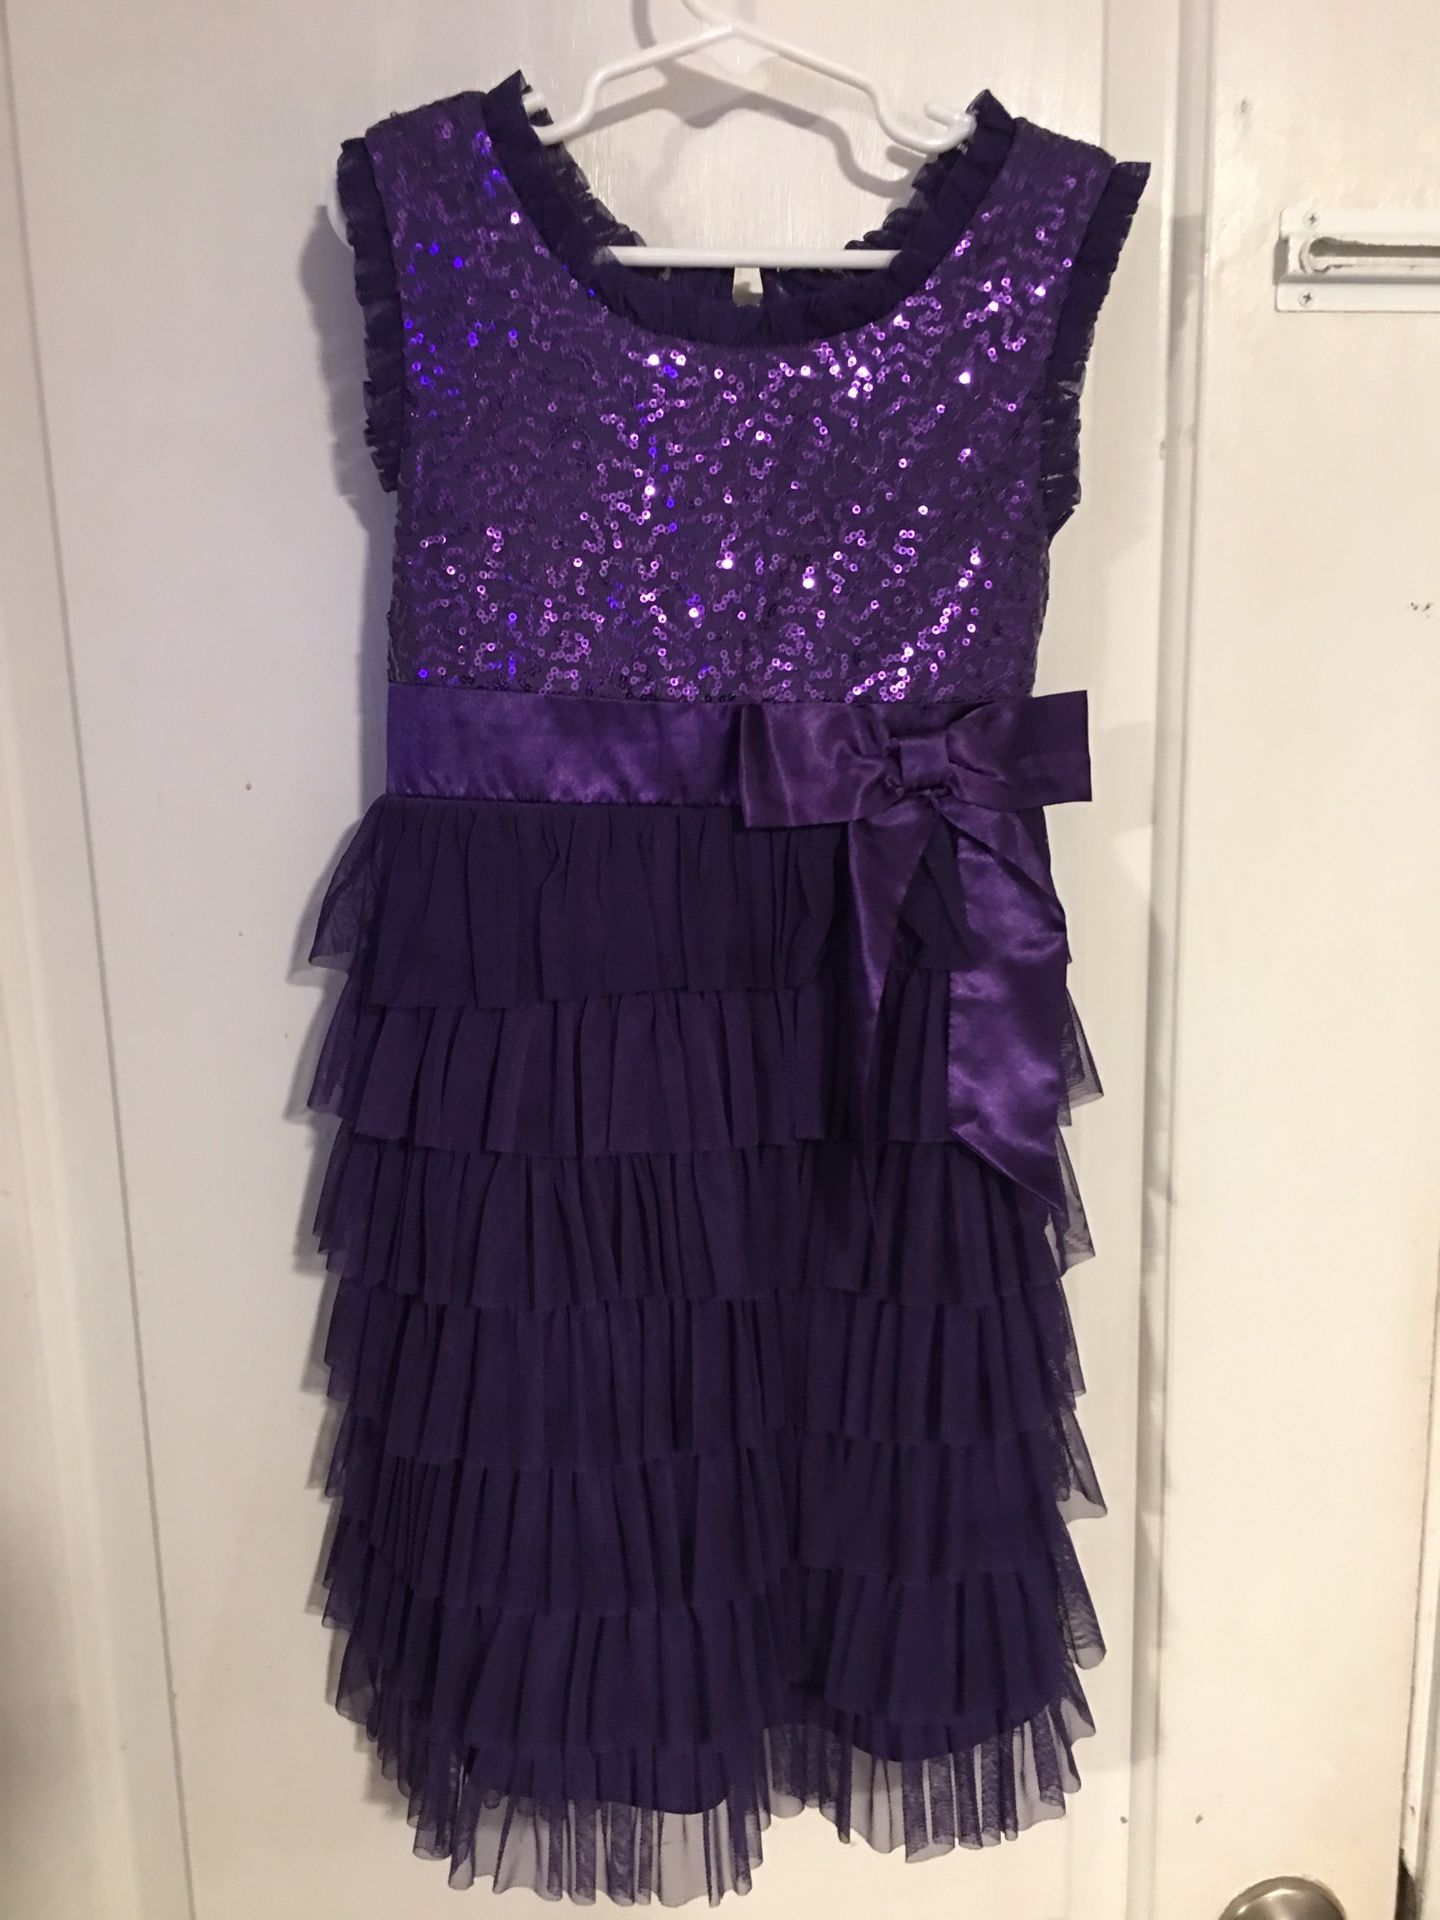 Girls purple fancy dress size 6